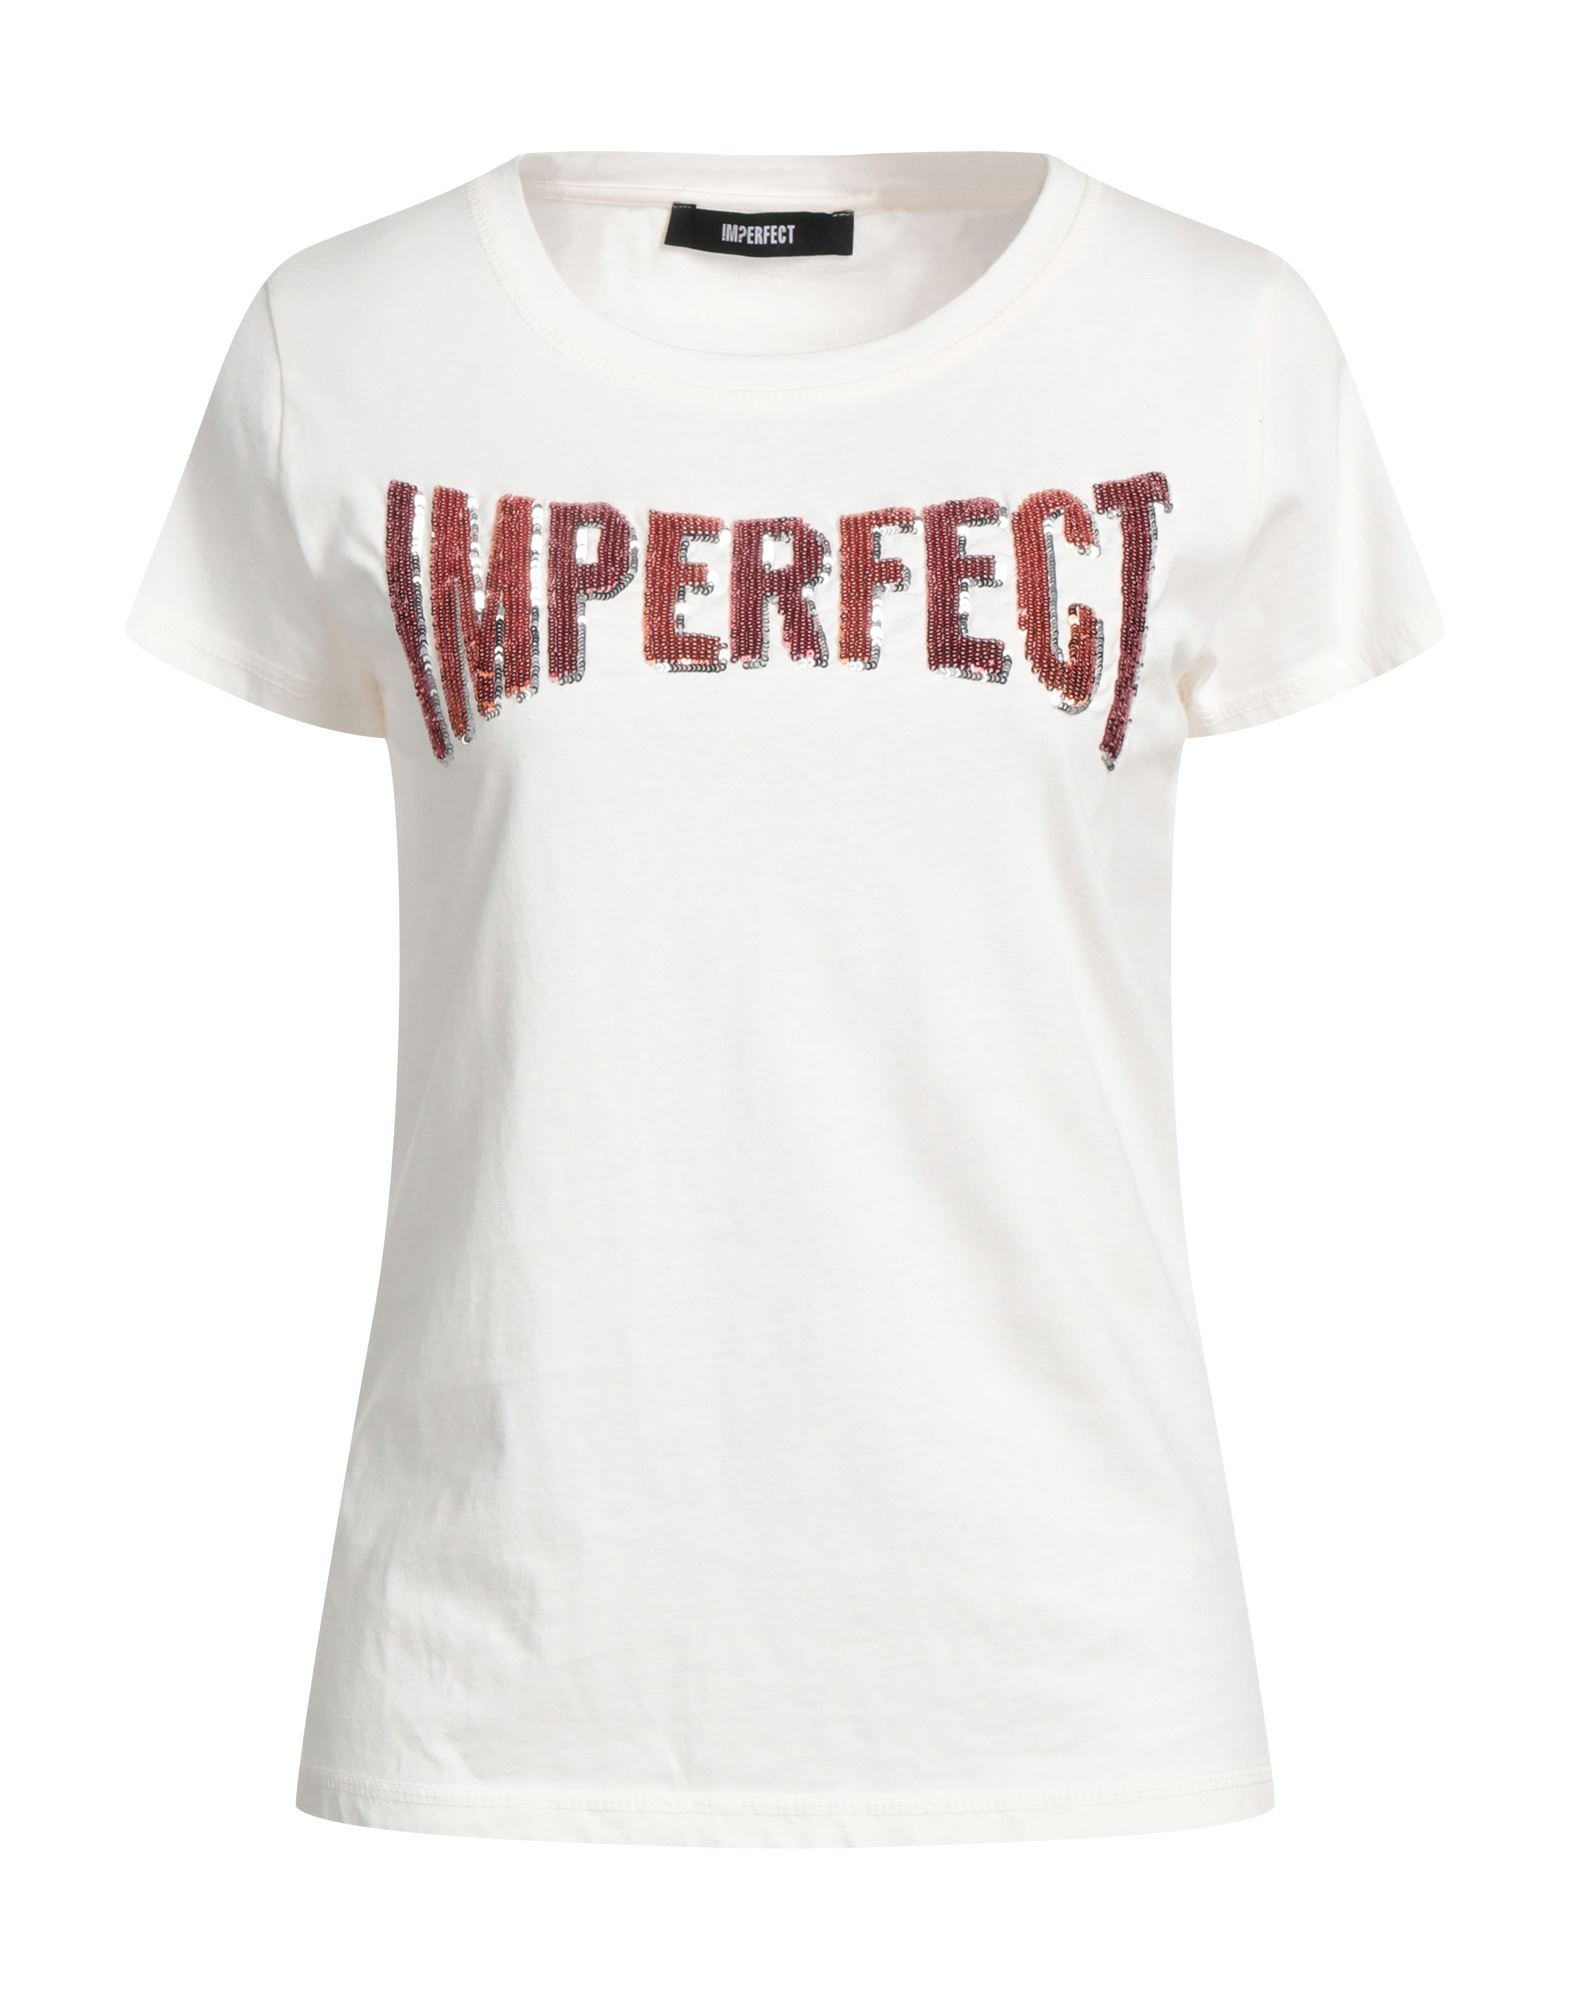 !m?erfect Woman T-shirt White Size M Cotton